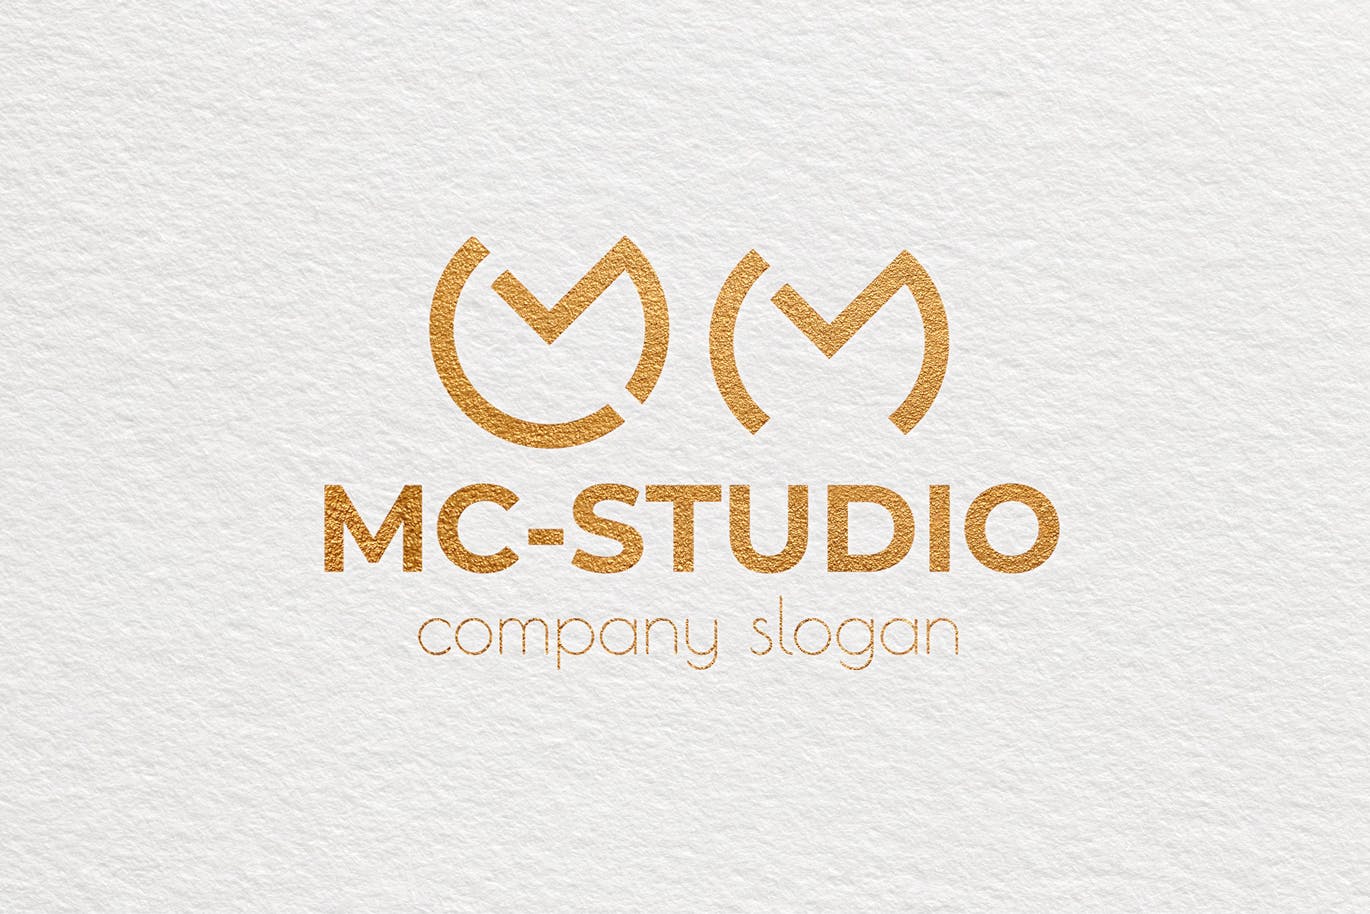 创意工作室图形Logo设计第一素材精选模板 Mc Studio Creative Logo Template插图(3)